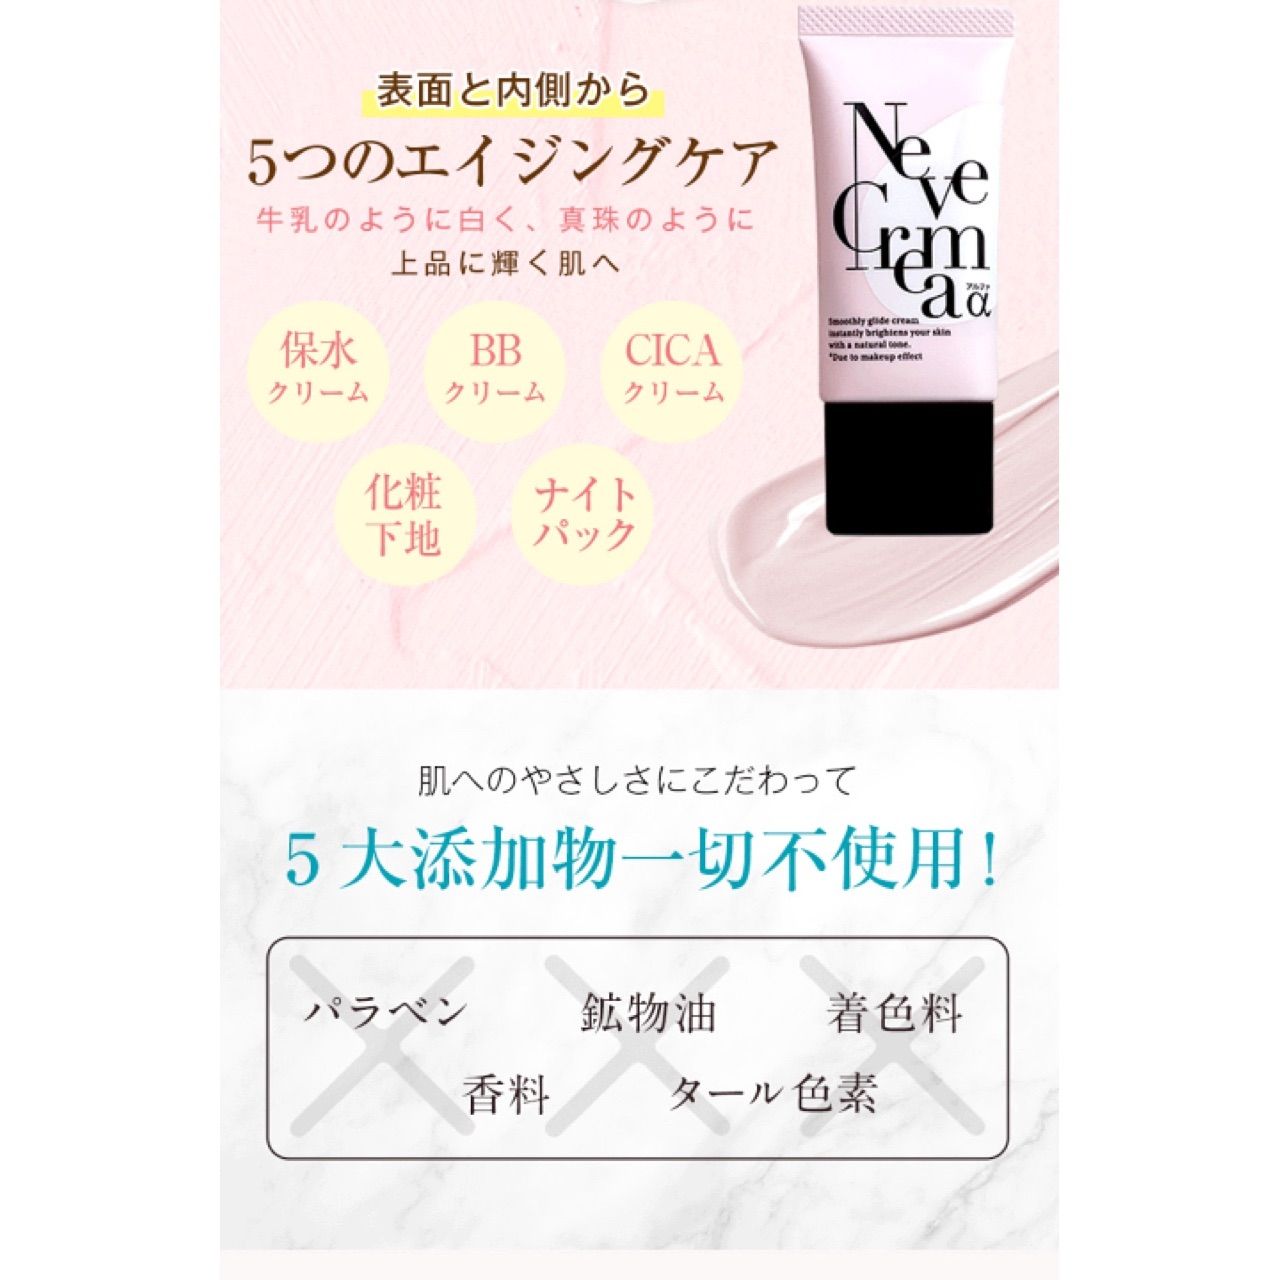 【新品未開封】ネーヴェクレマ クリーム 30g 5本セット